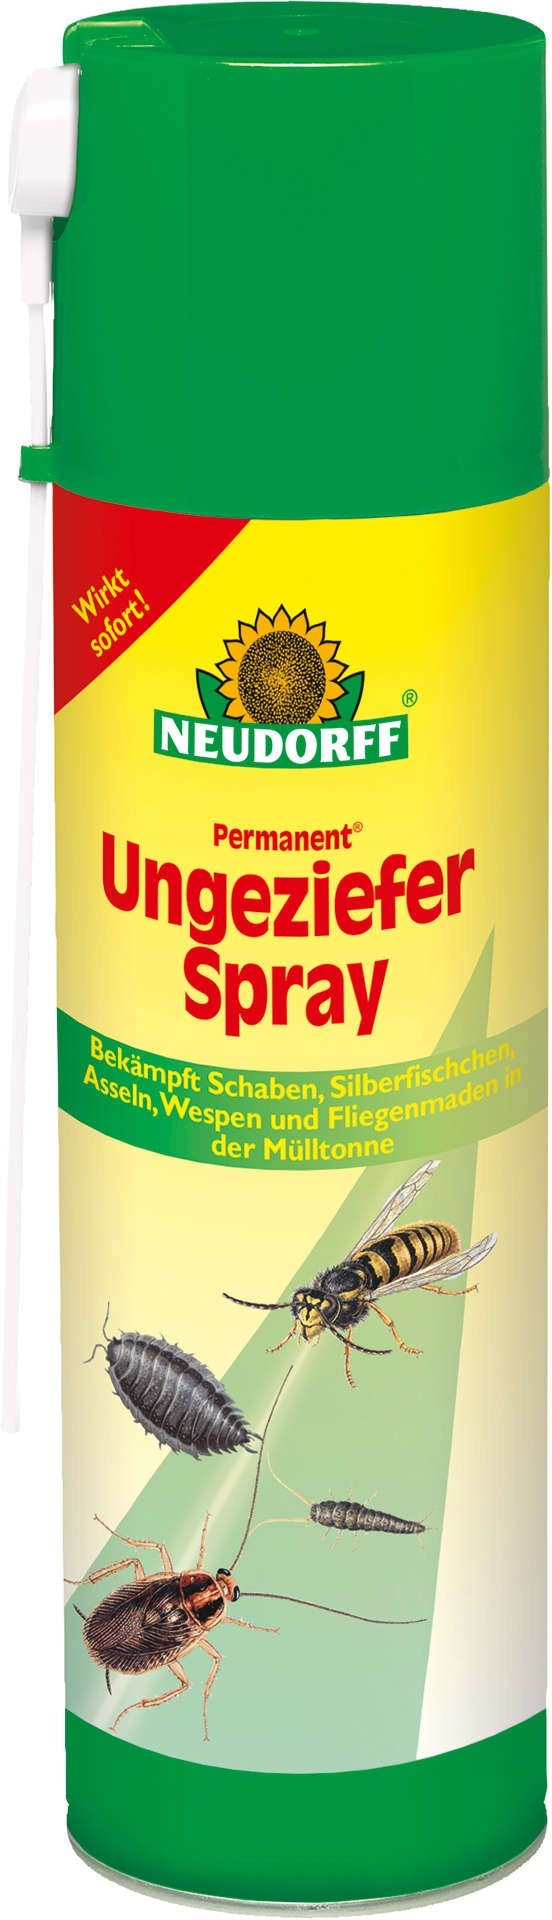 NEUDORFF Permanent Ungeziefer-Spray